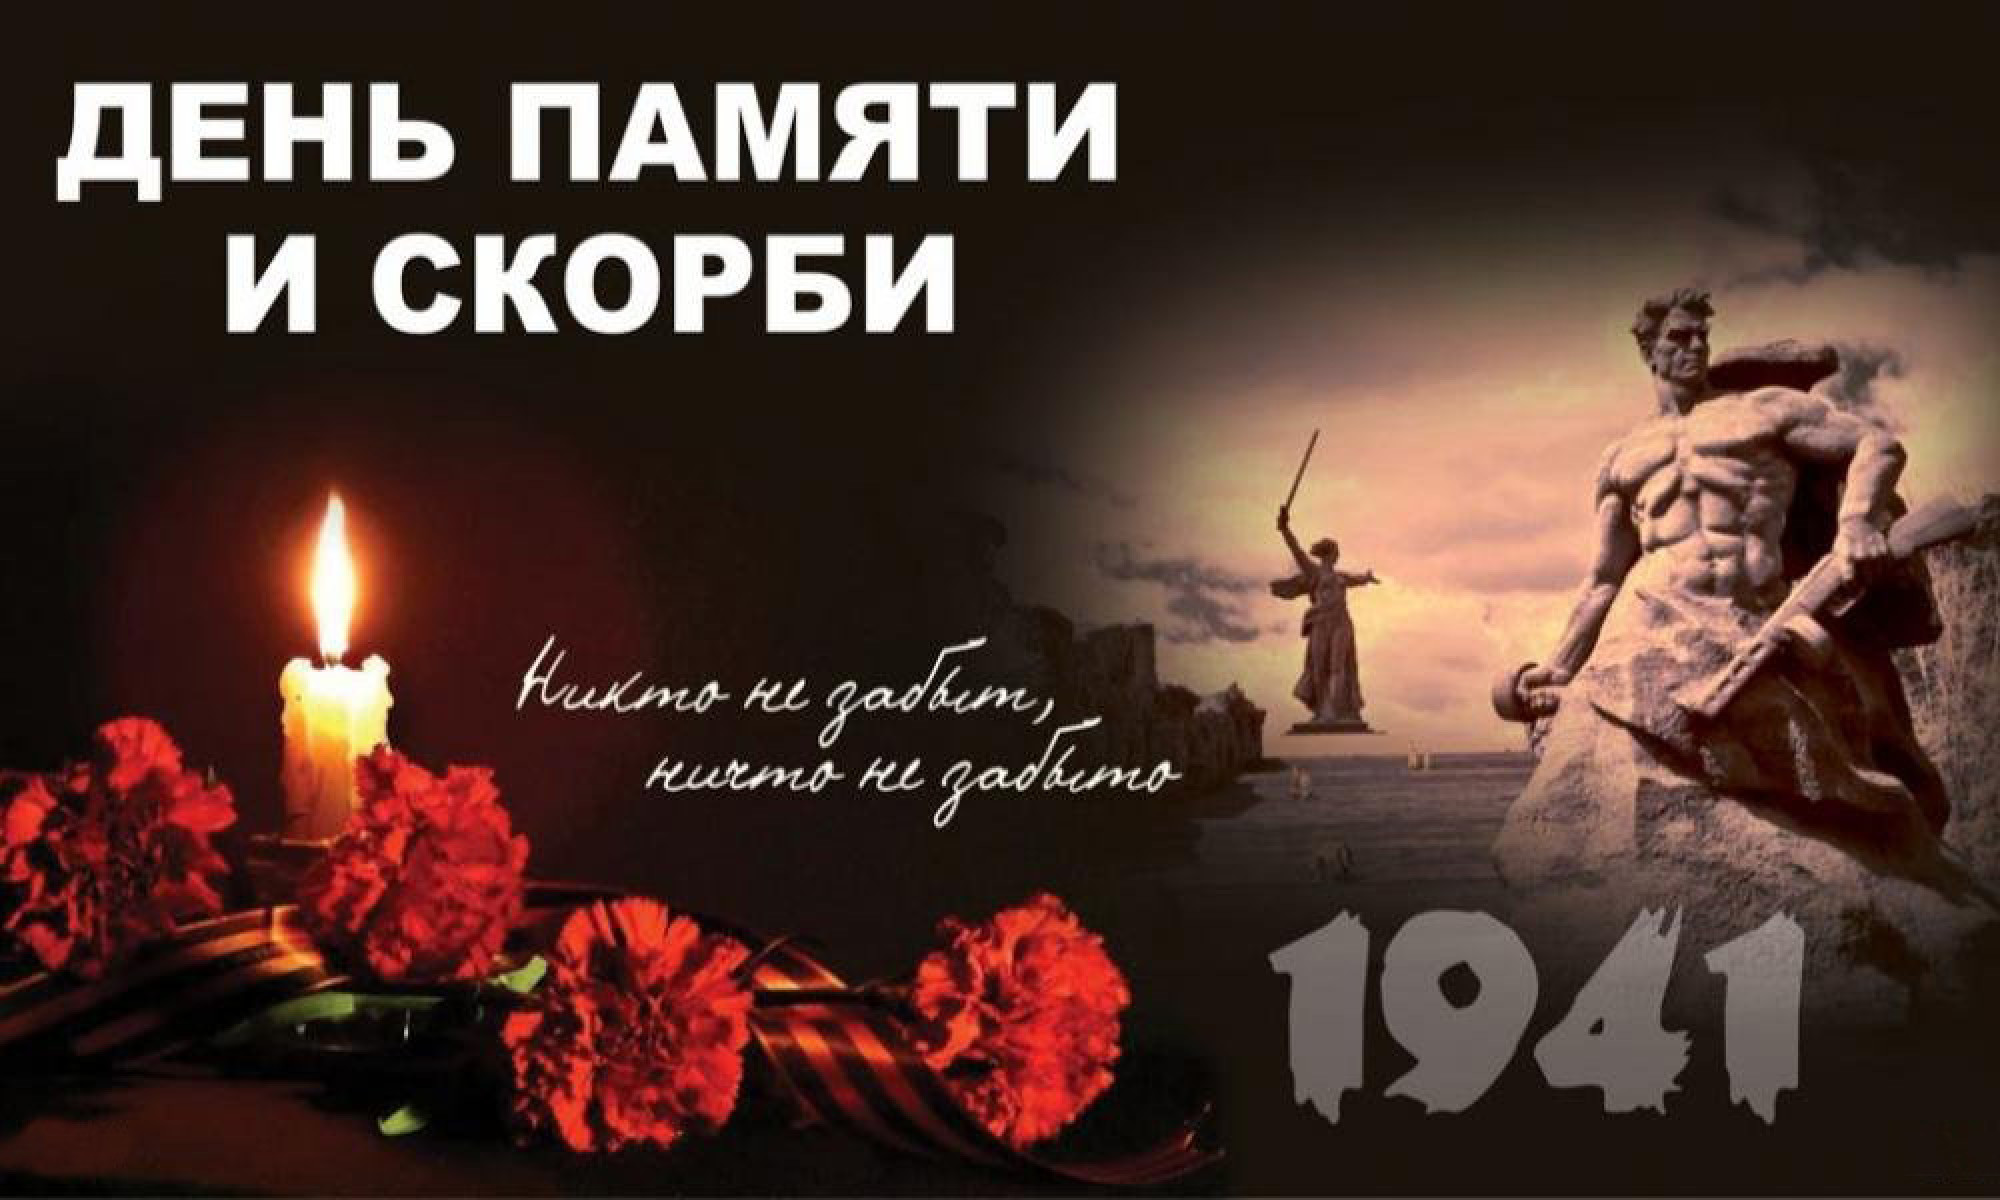 В учреждениях культуры подразделениях Чаплынского КТЦ Чаплынского муниципального округа прошли памятные мероприятия посвящённые Дню памяти и скорби.